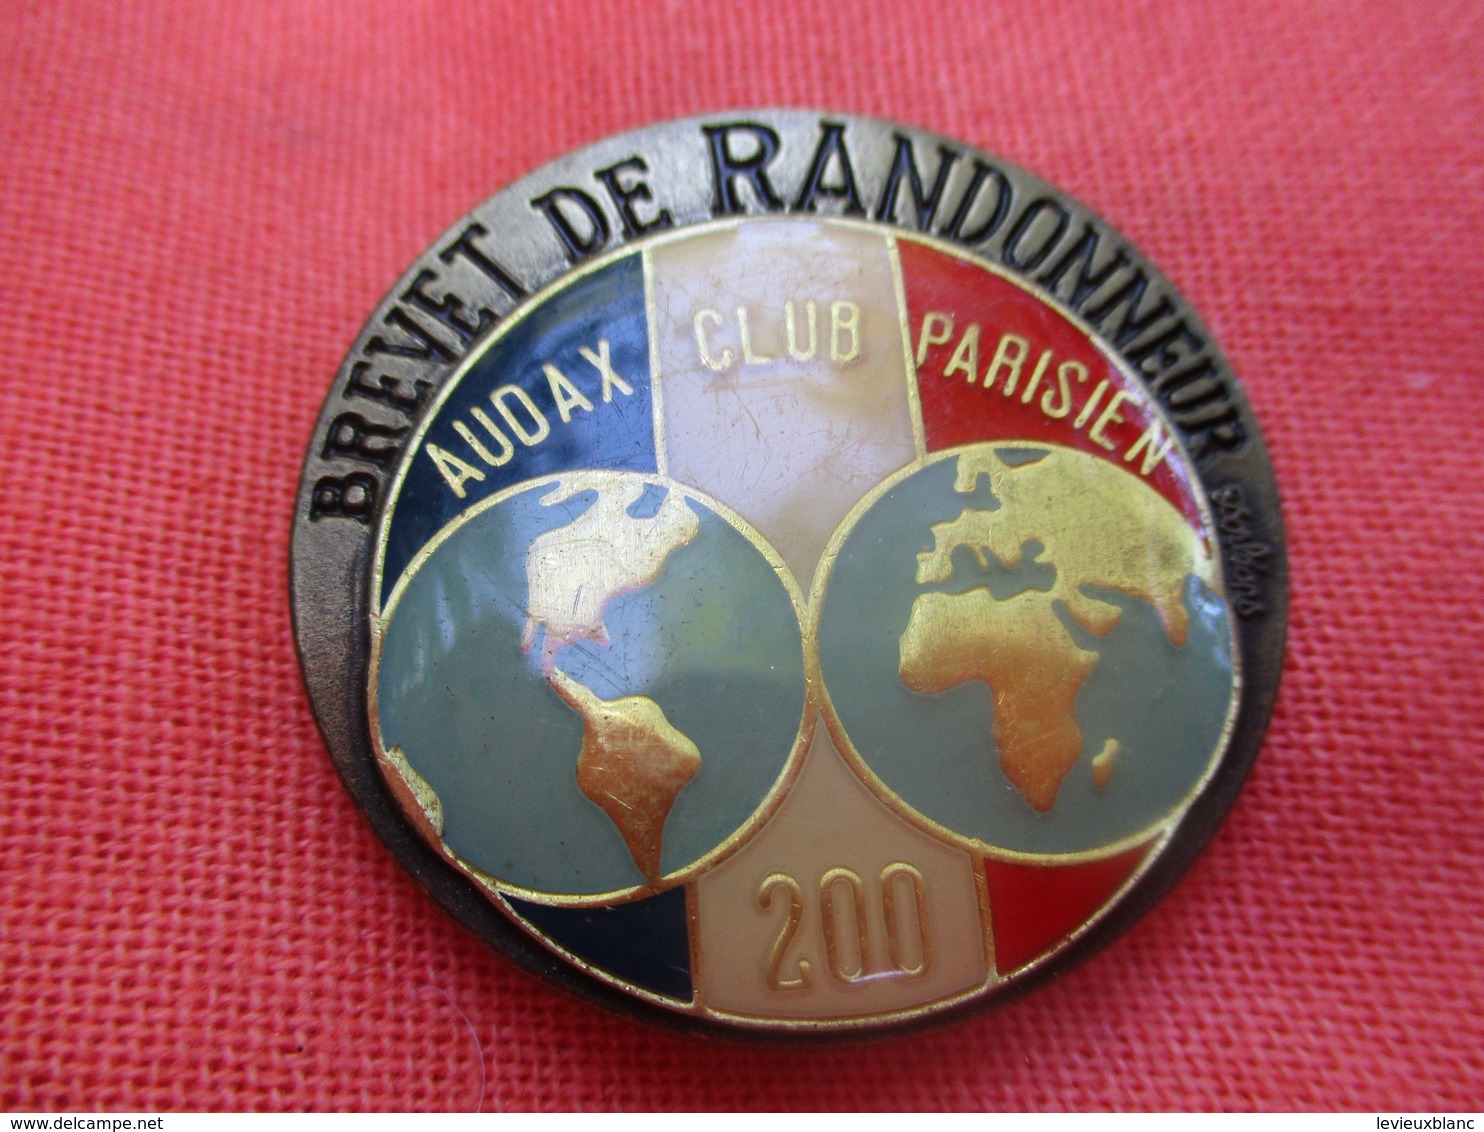 Insigne De Sport  à épingle/ Cyclisme/  Audax Club Parisien/Brevet De RANDONNEUR/200 Km/Beraudy/Vers 1980         SPO304 - Cycling